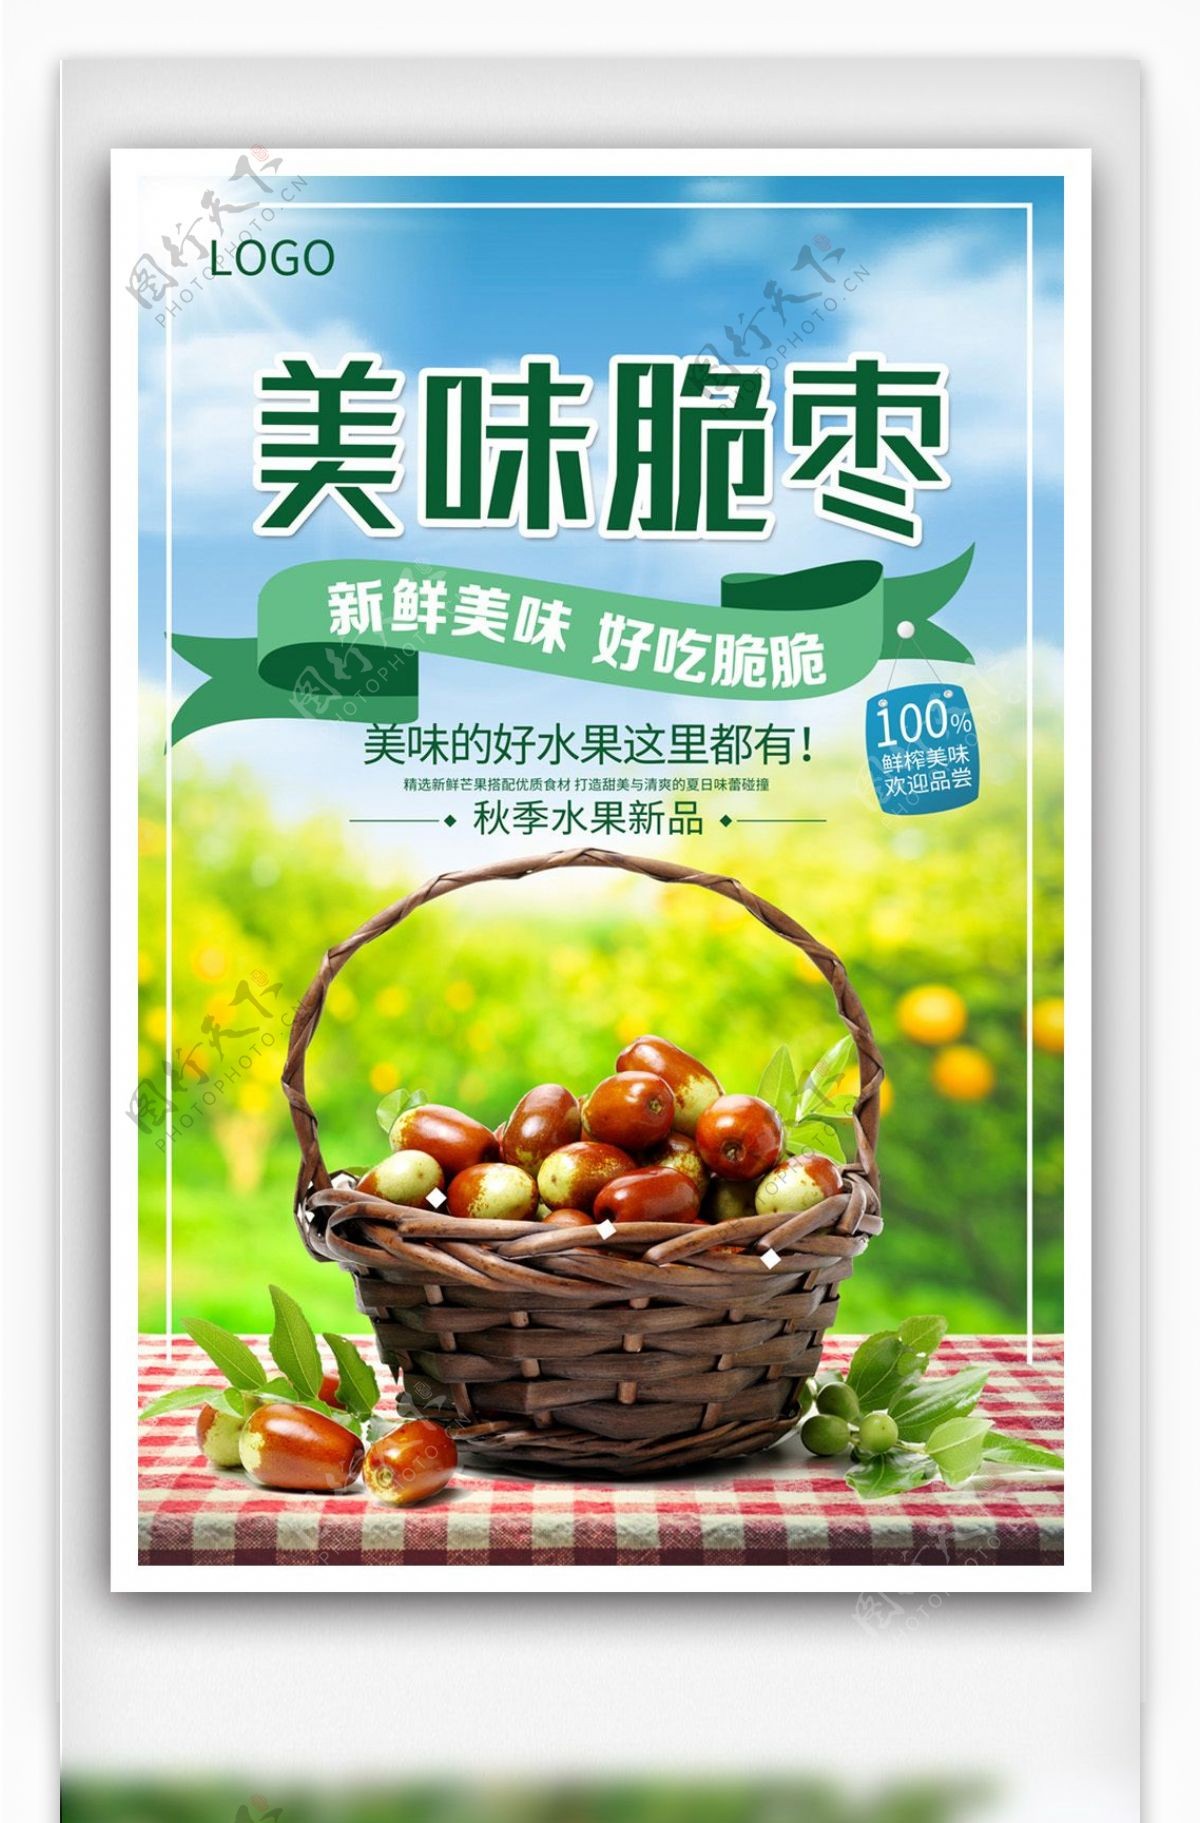 多彩简约中国风美味冬枣海报